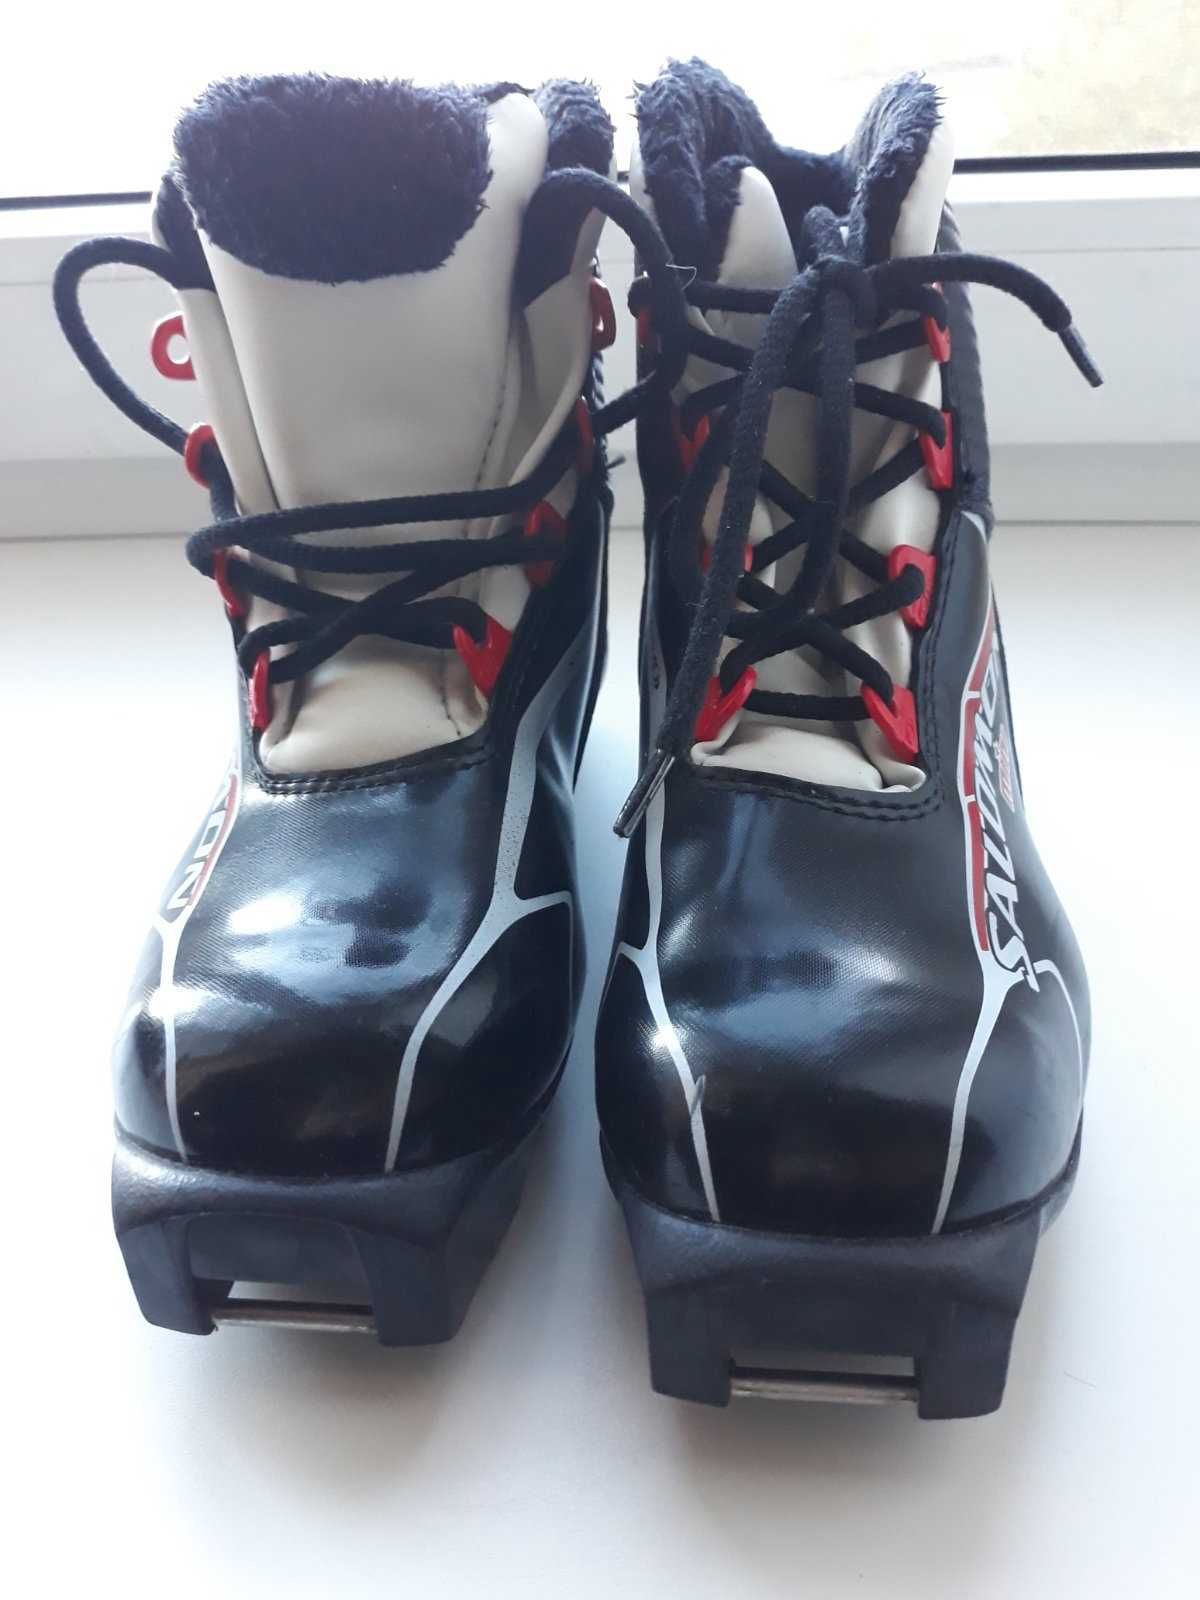 Продам ботинки детские Salomon для беговых лыж.Размер 31,5